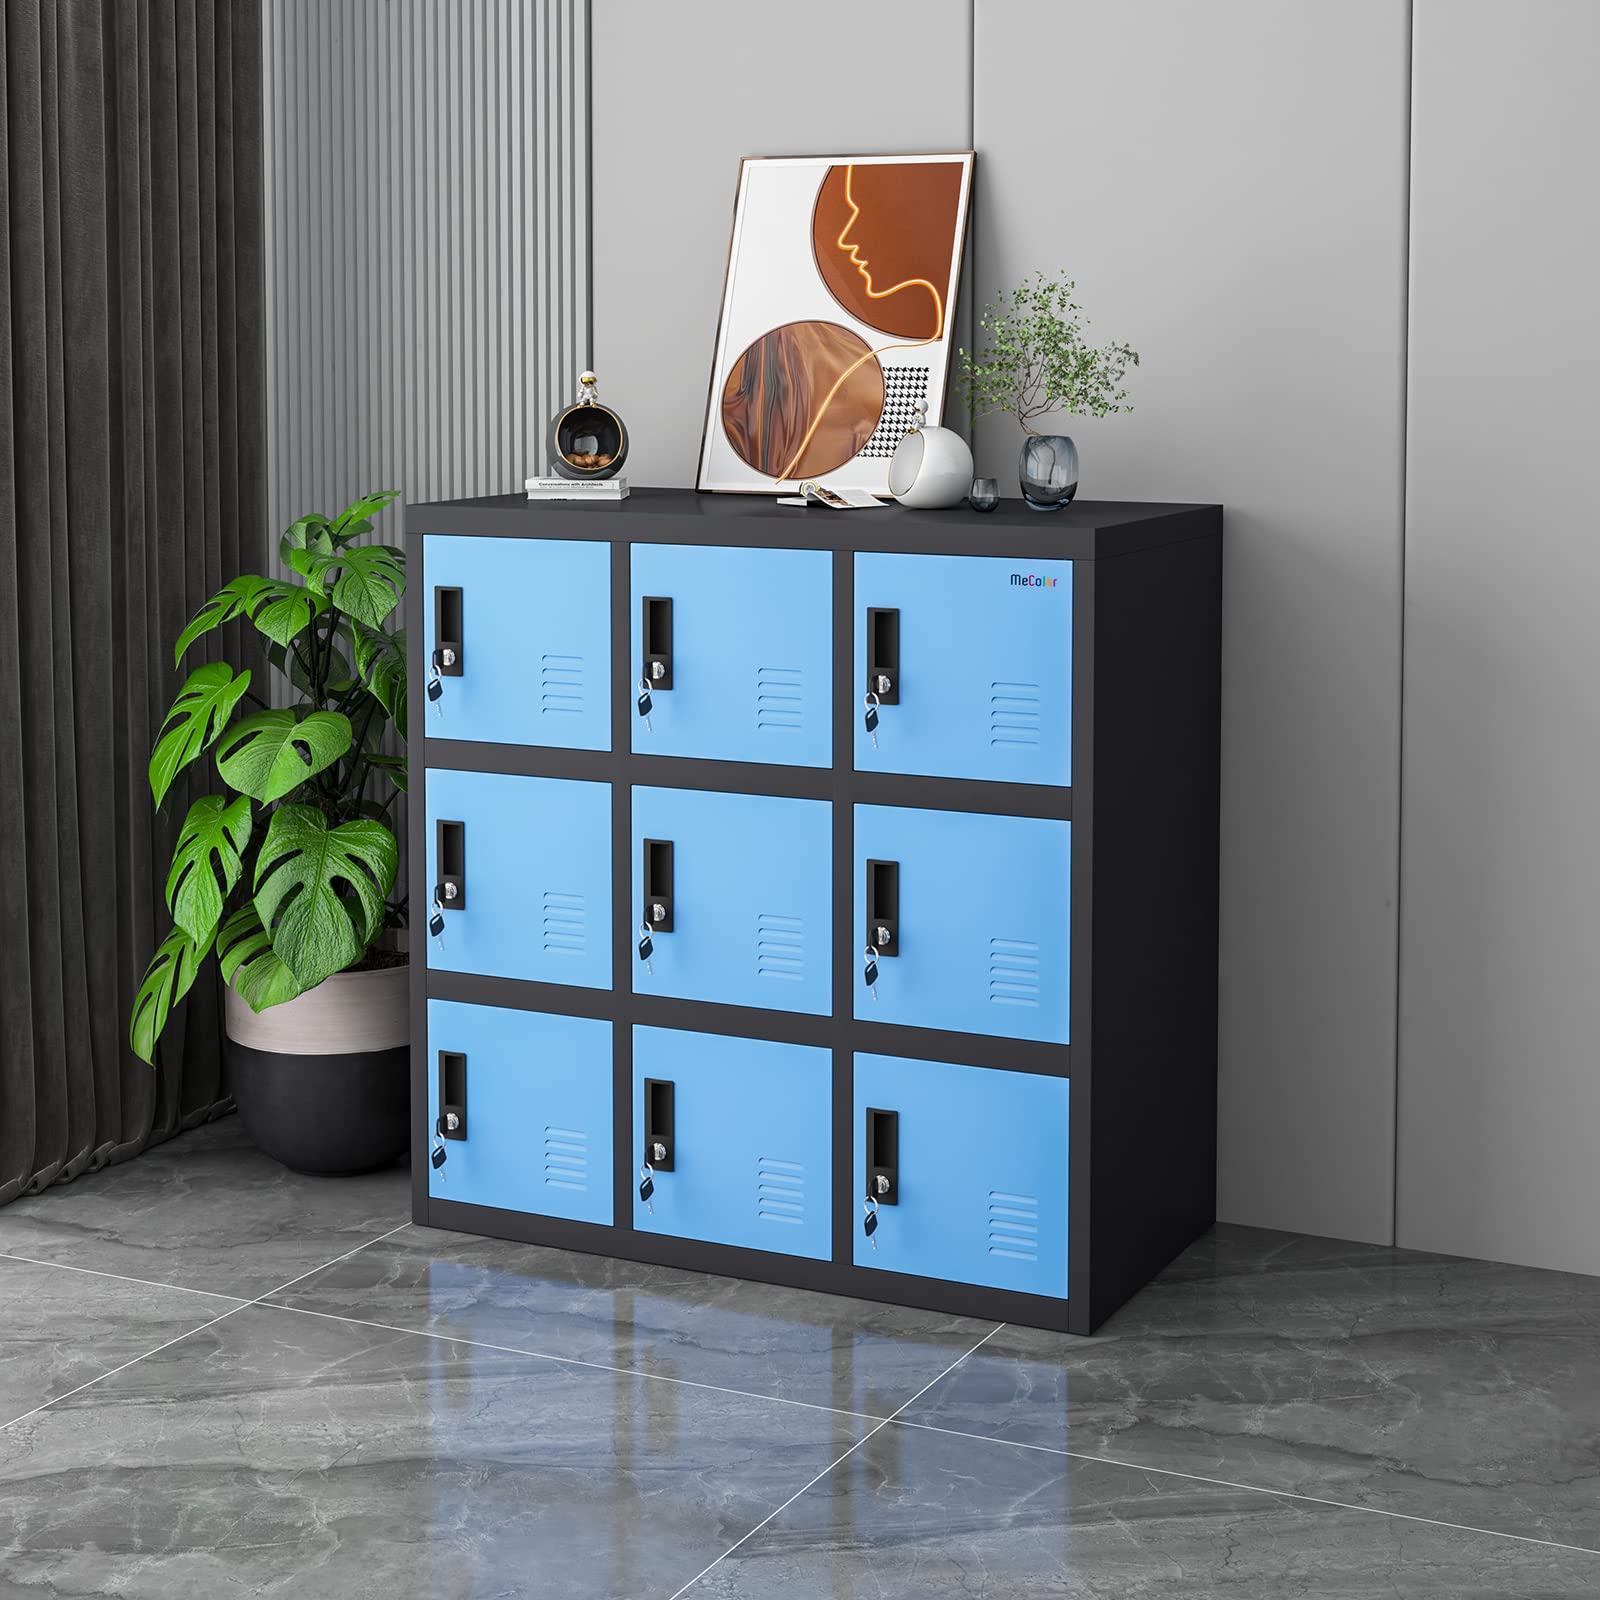 MECOLOR Small Office Storage Locker Cabinet Organizer for Employee,School Locker for Kids Mini Size (Blue, W9D)